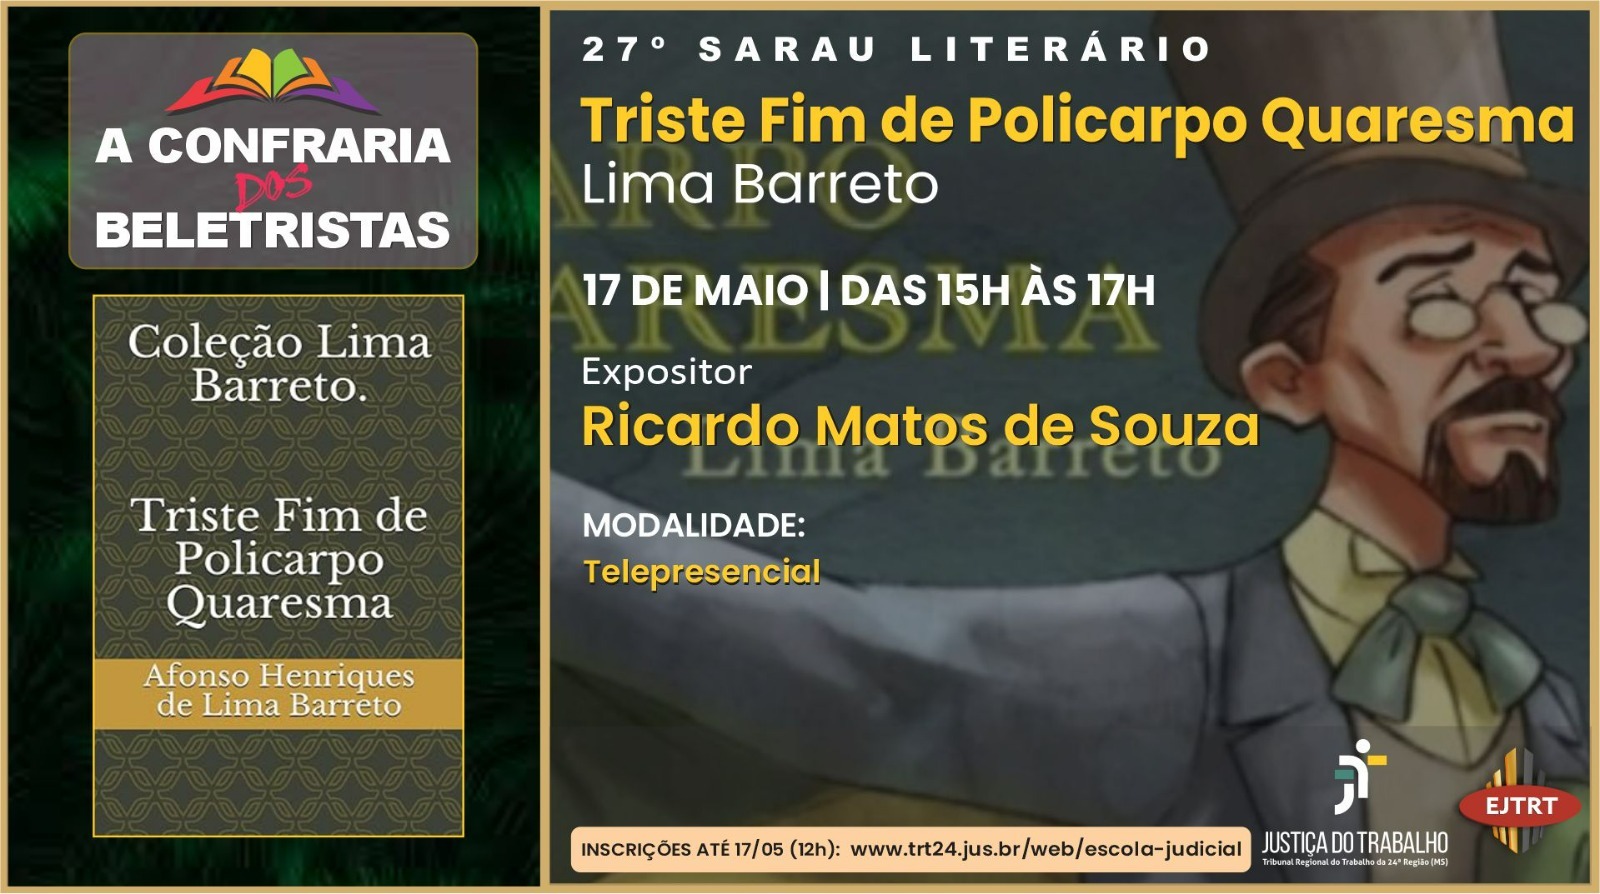 27° Sarau Literário debaterá clássico da literatura brasileira “Triste Fim de Policarpo Quaresma”